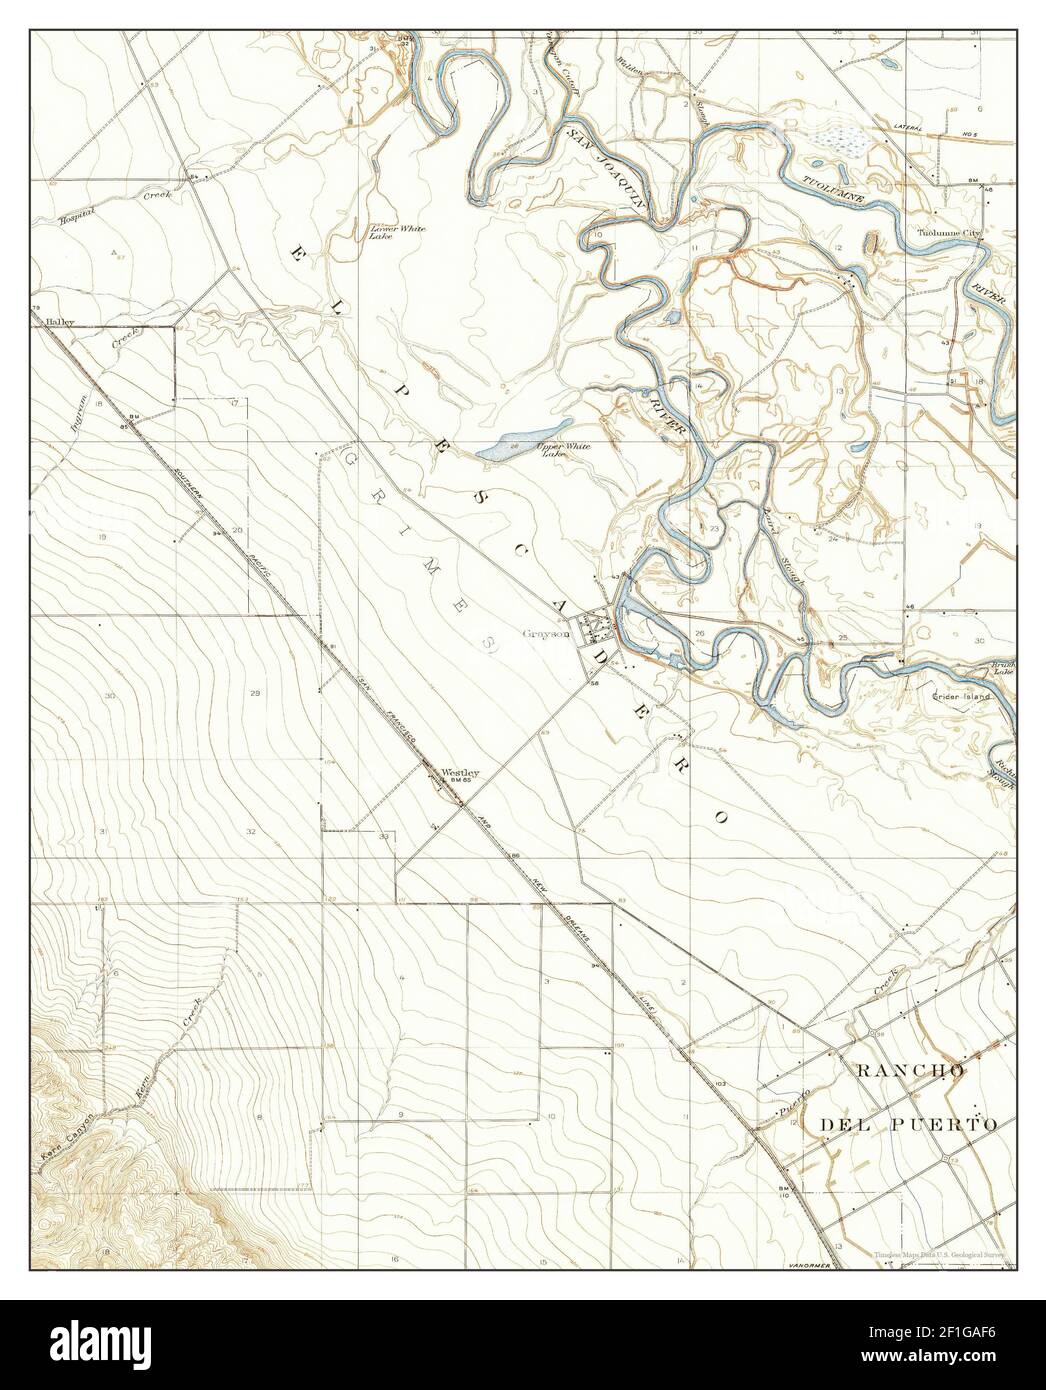 Westley, California, Karte 1915, 1:31680, Vereinigte Staaten von Amerika von Timeless Maps, Daten U.S. Geological Survey Stockfoto